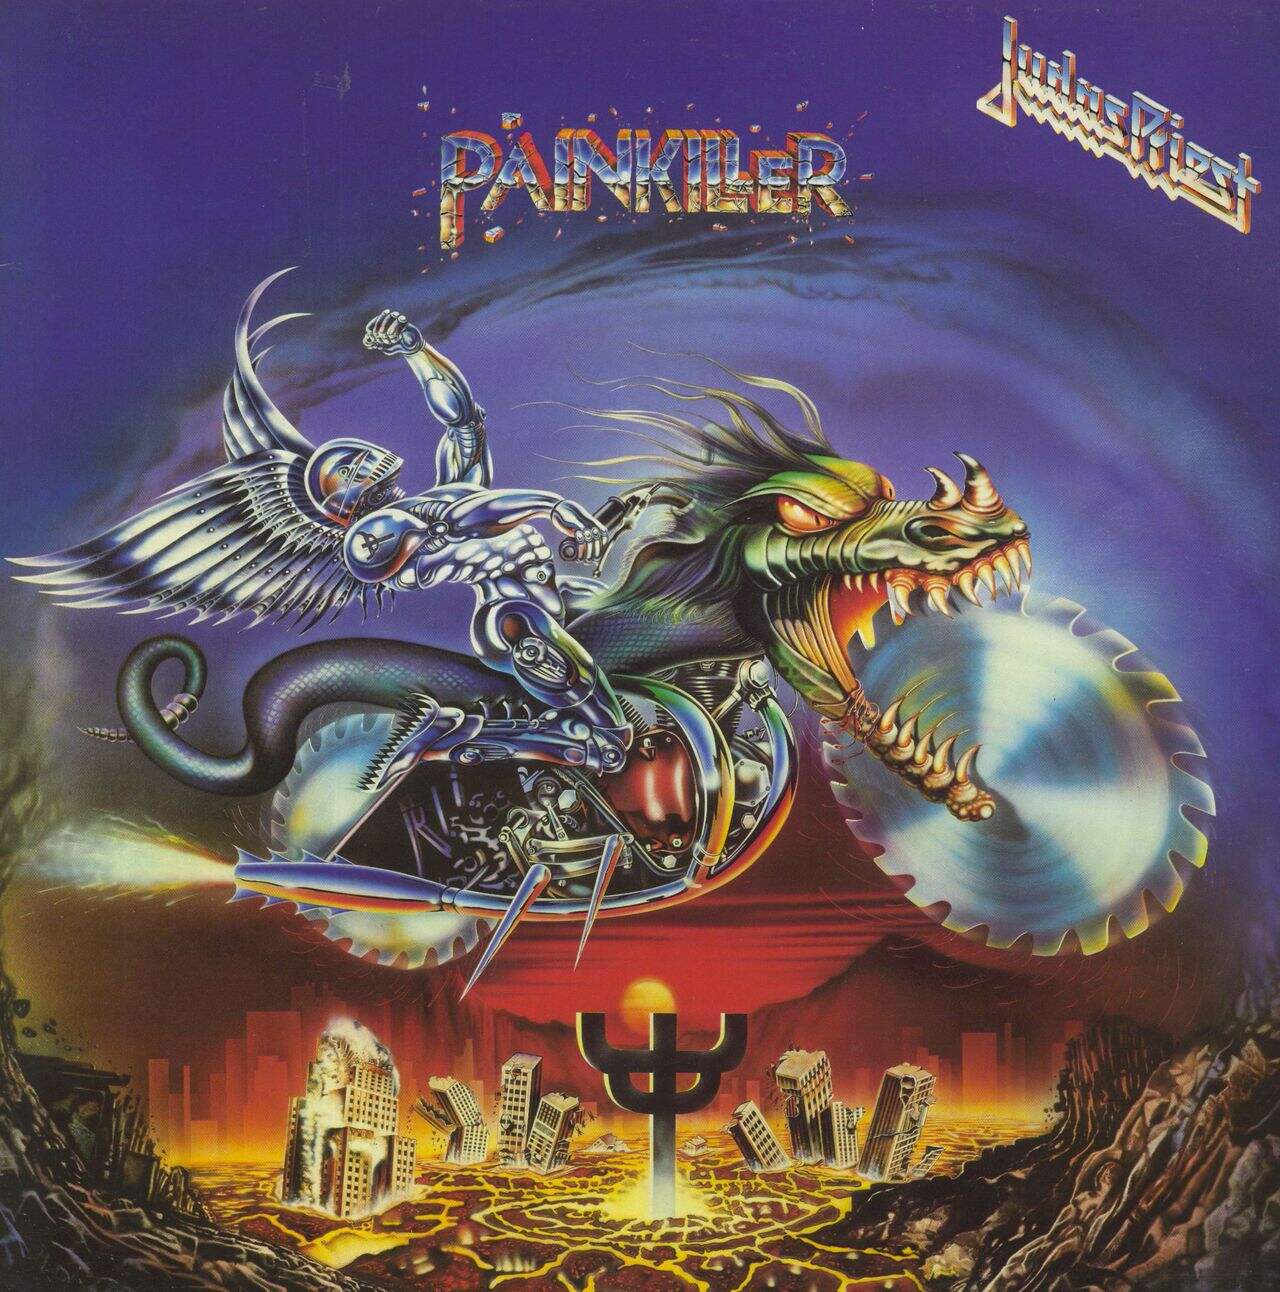 Judas Priest Painkiller UK Vinyl LP